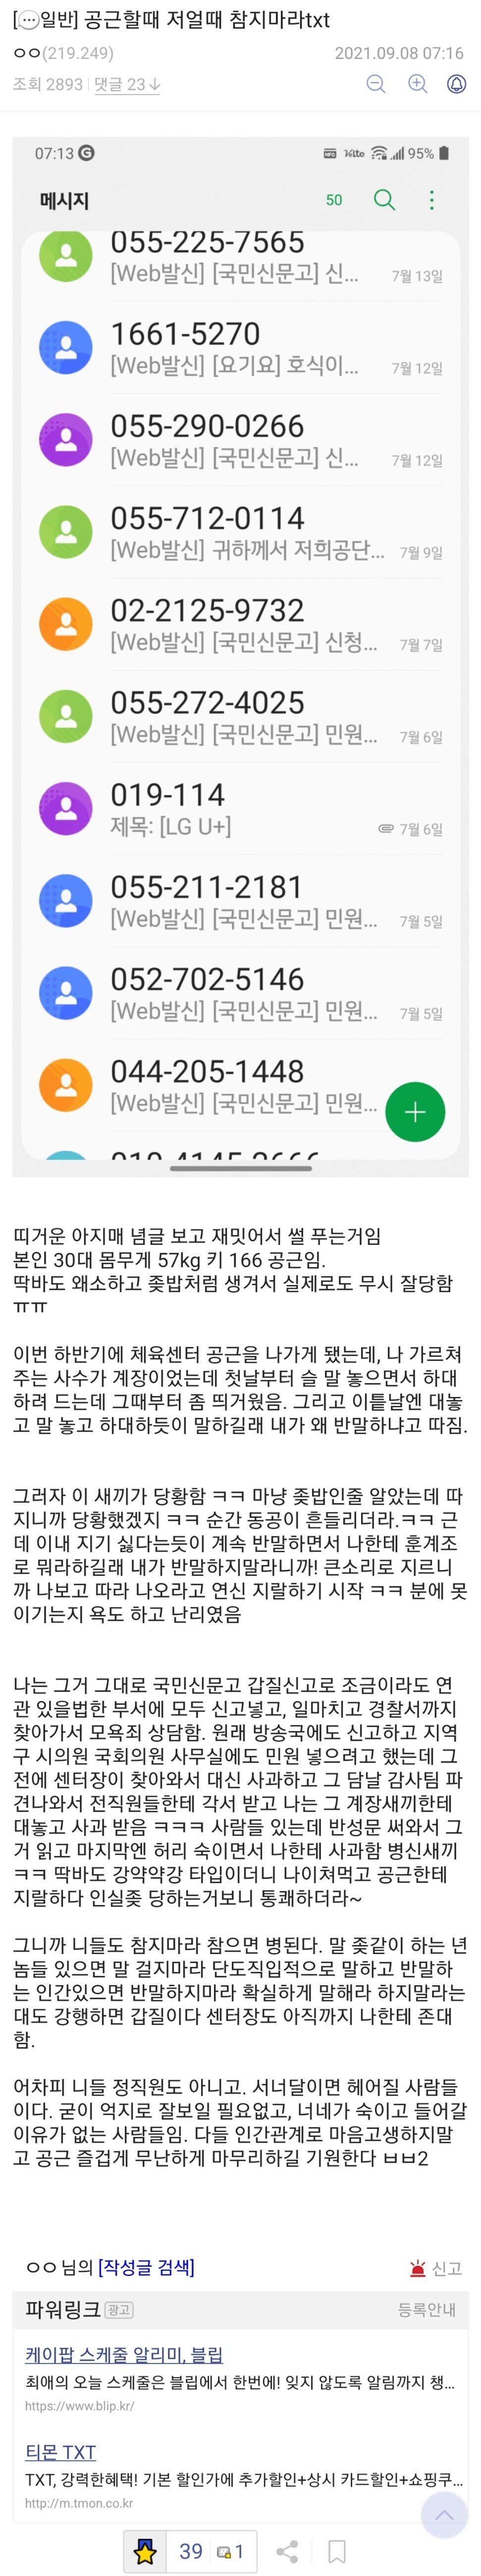 반말 찍찍하는 공무원 국민신문고 신고후기